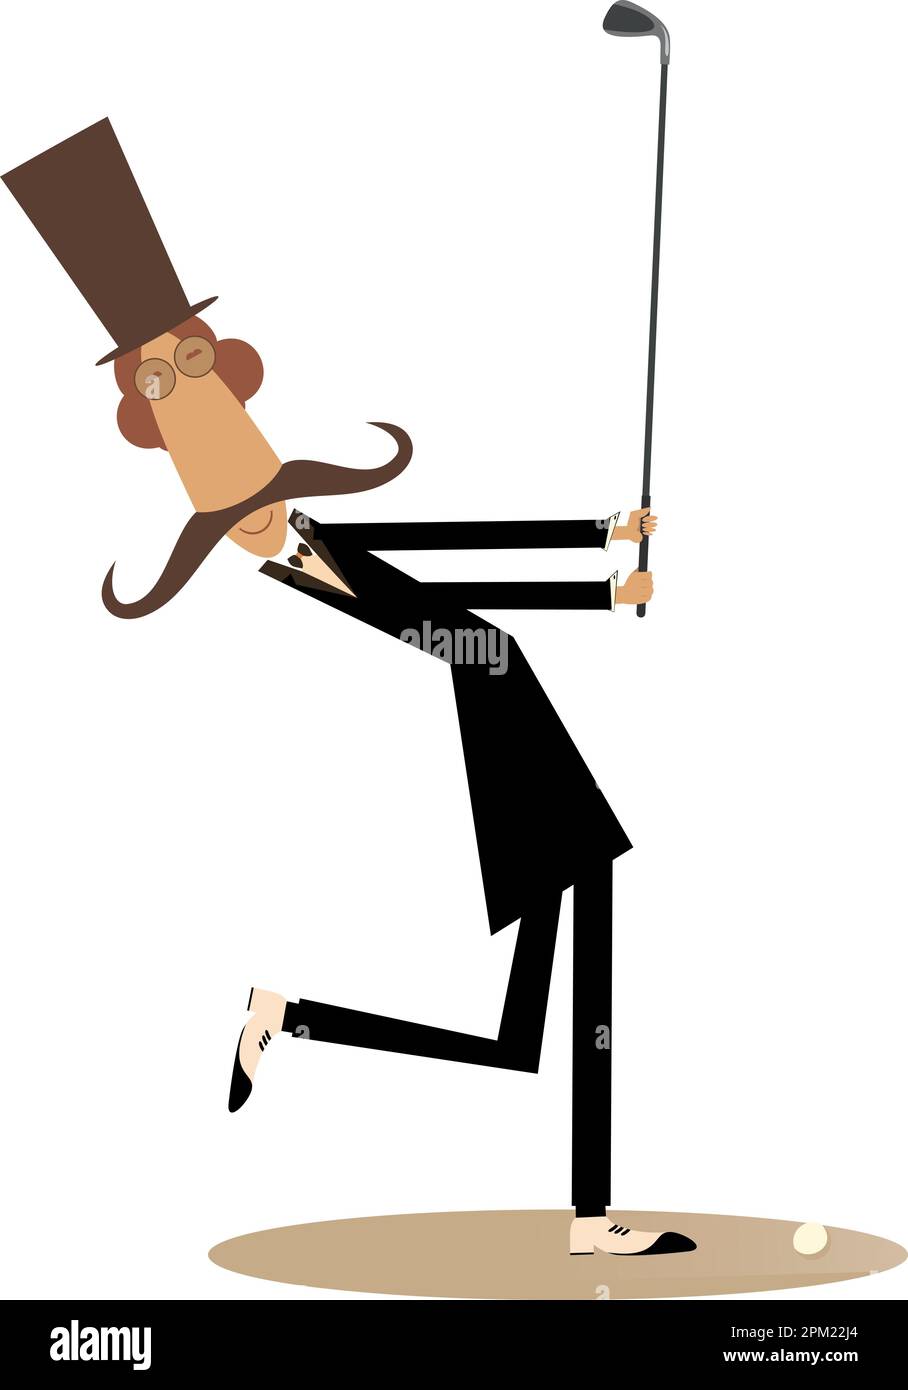 Cartoon langer Schnurrbart Herr mit Hut hält einen Golfschläger und versucht, einen guten Schuss zu machen Stock Vektor